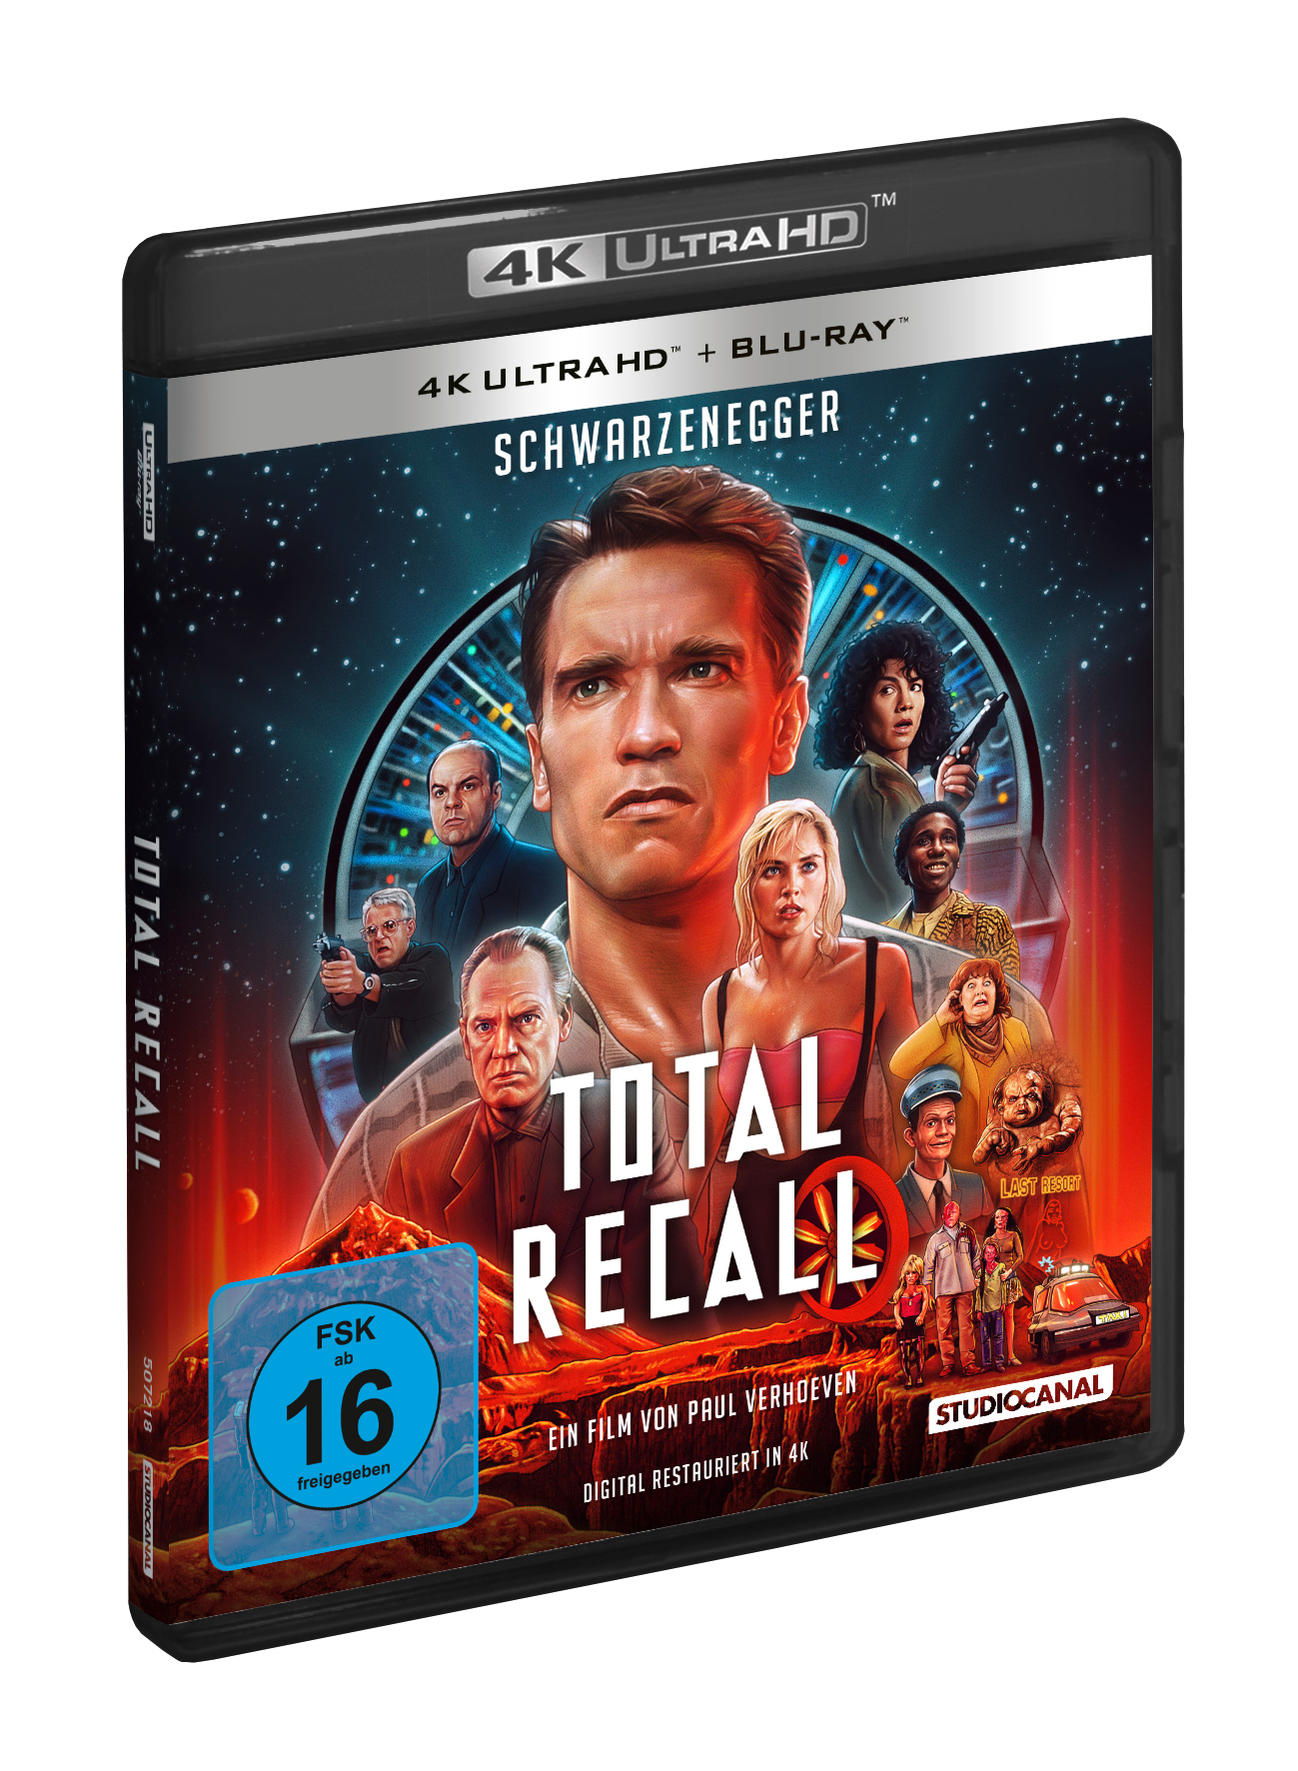 Die Recall Blu-ray - totale Total Ultra HD 4K Erinnerung